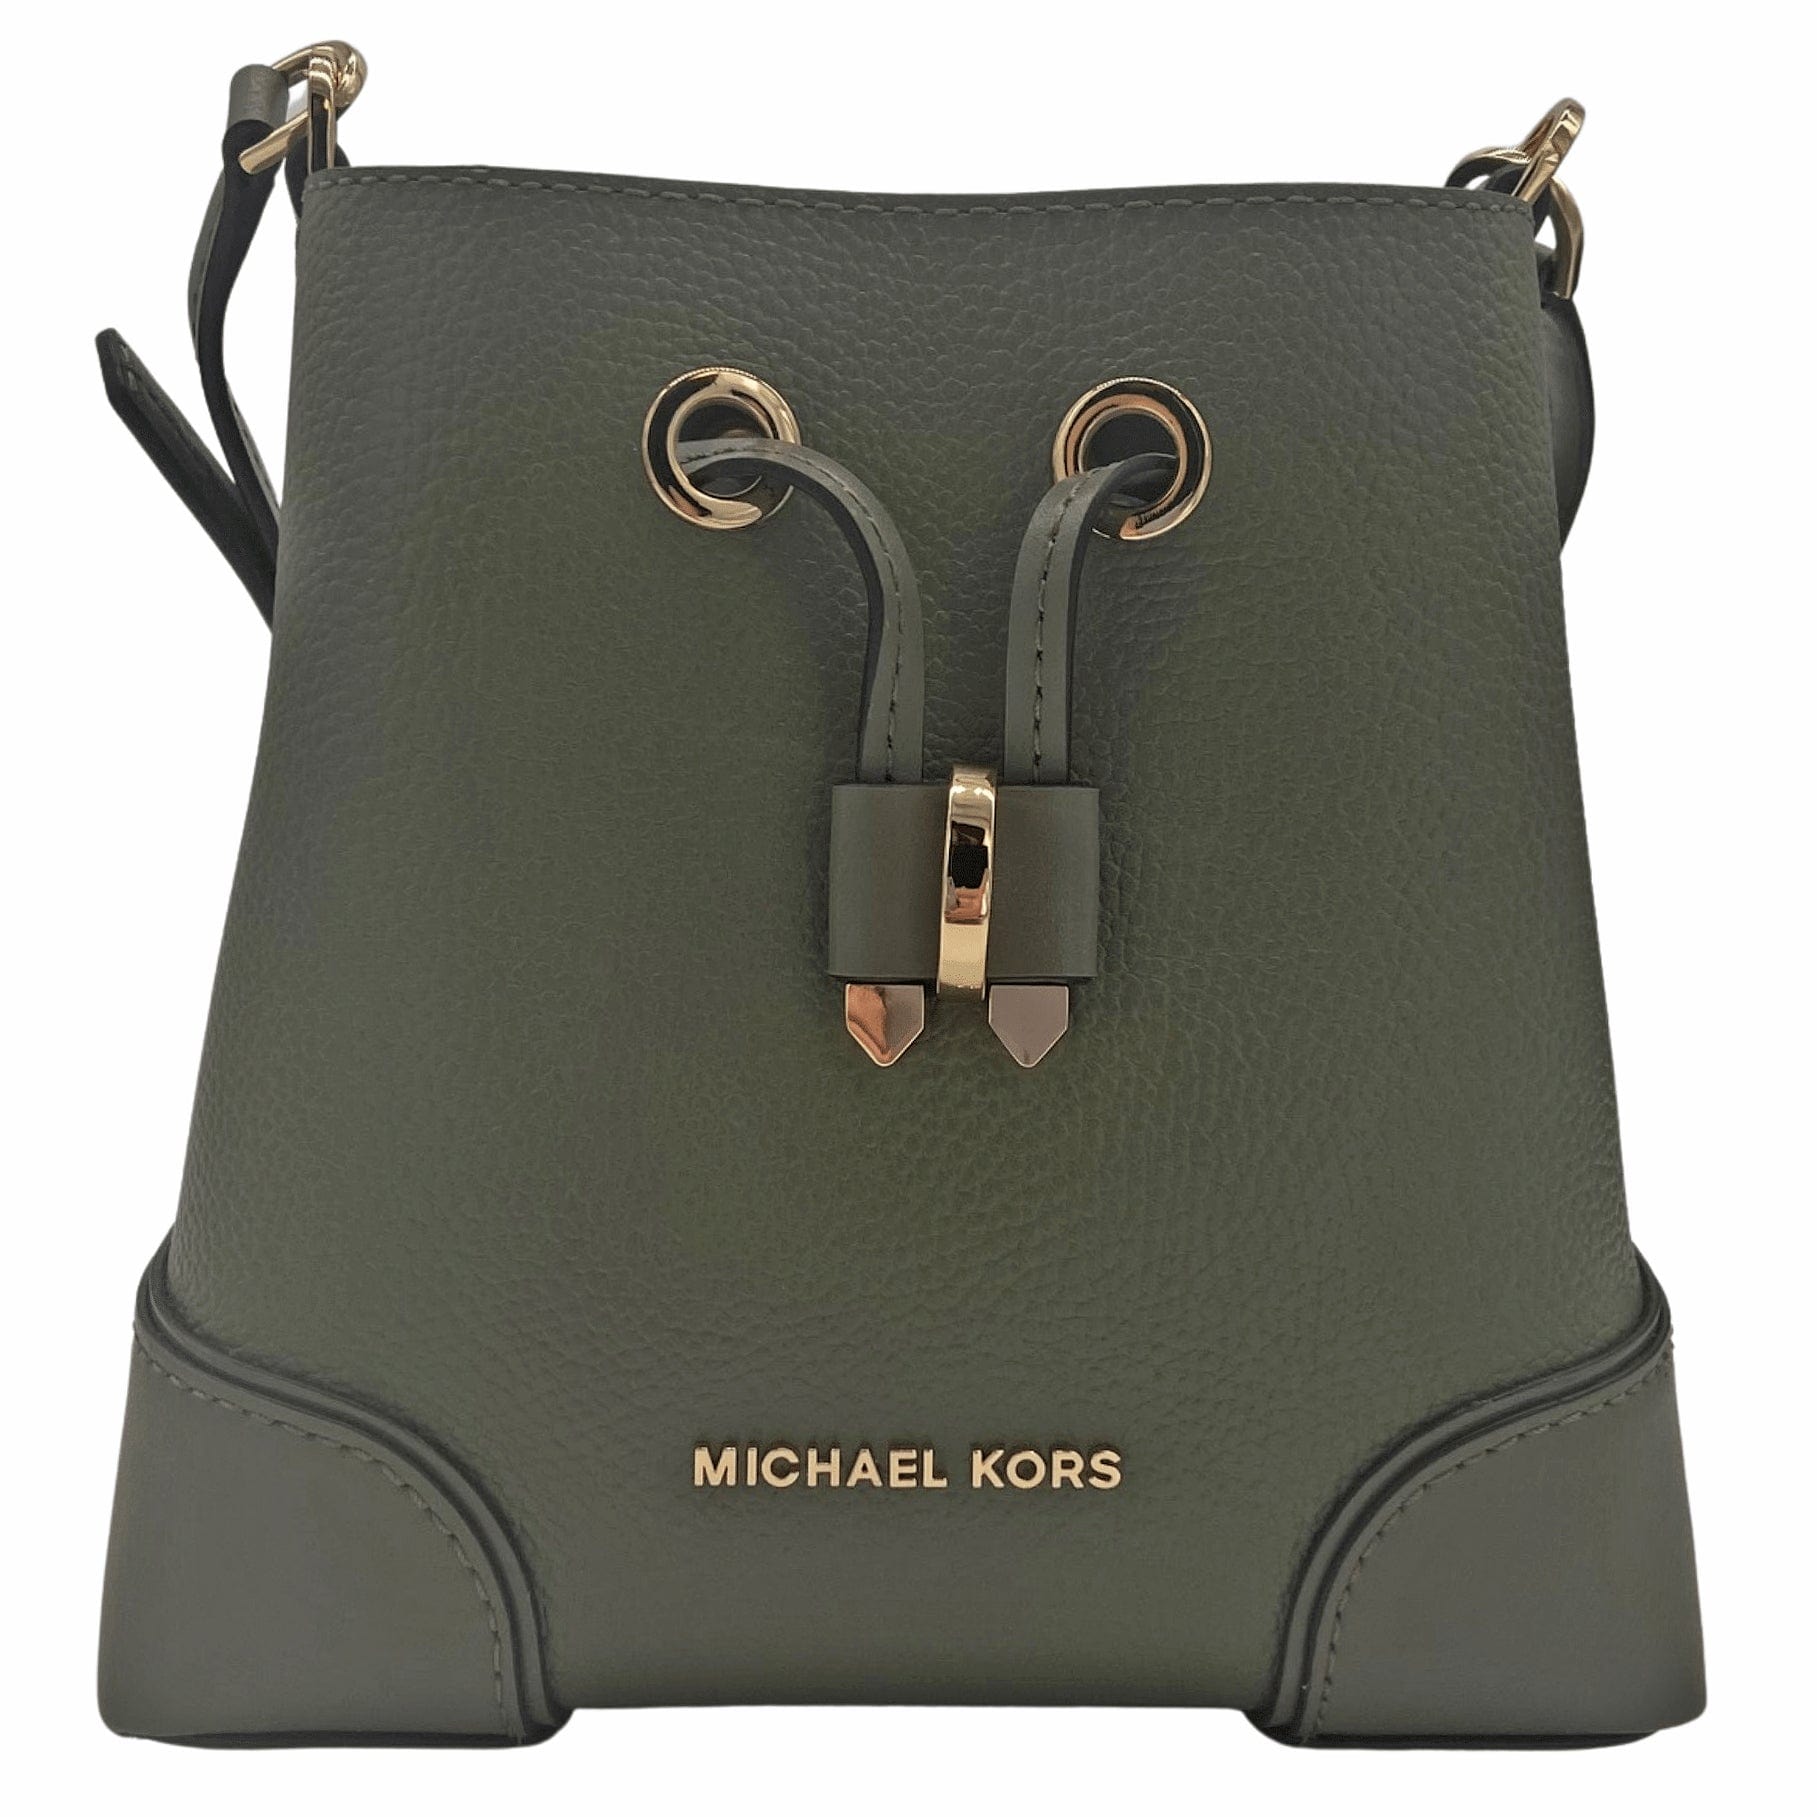 michael kors handbags new with tags